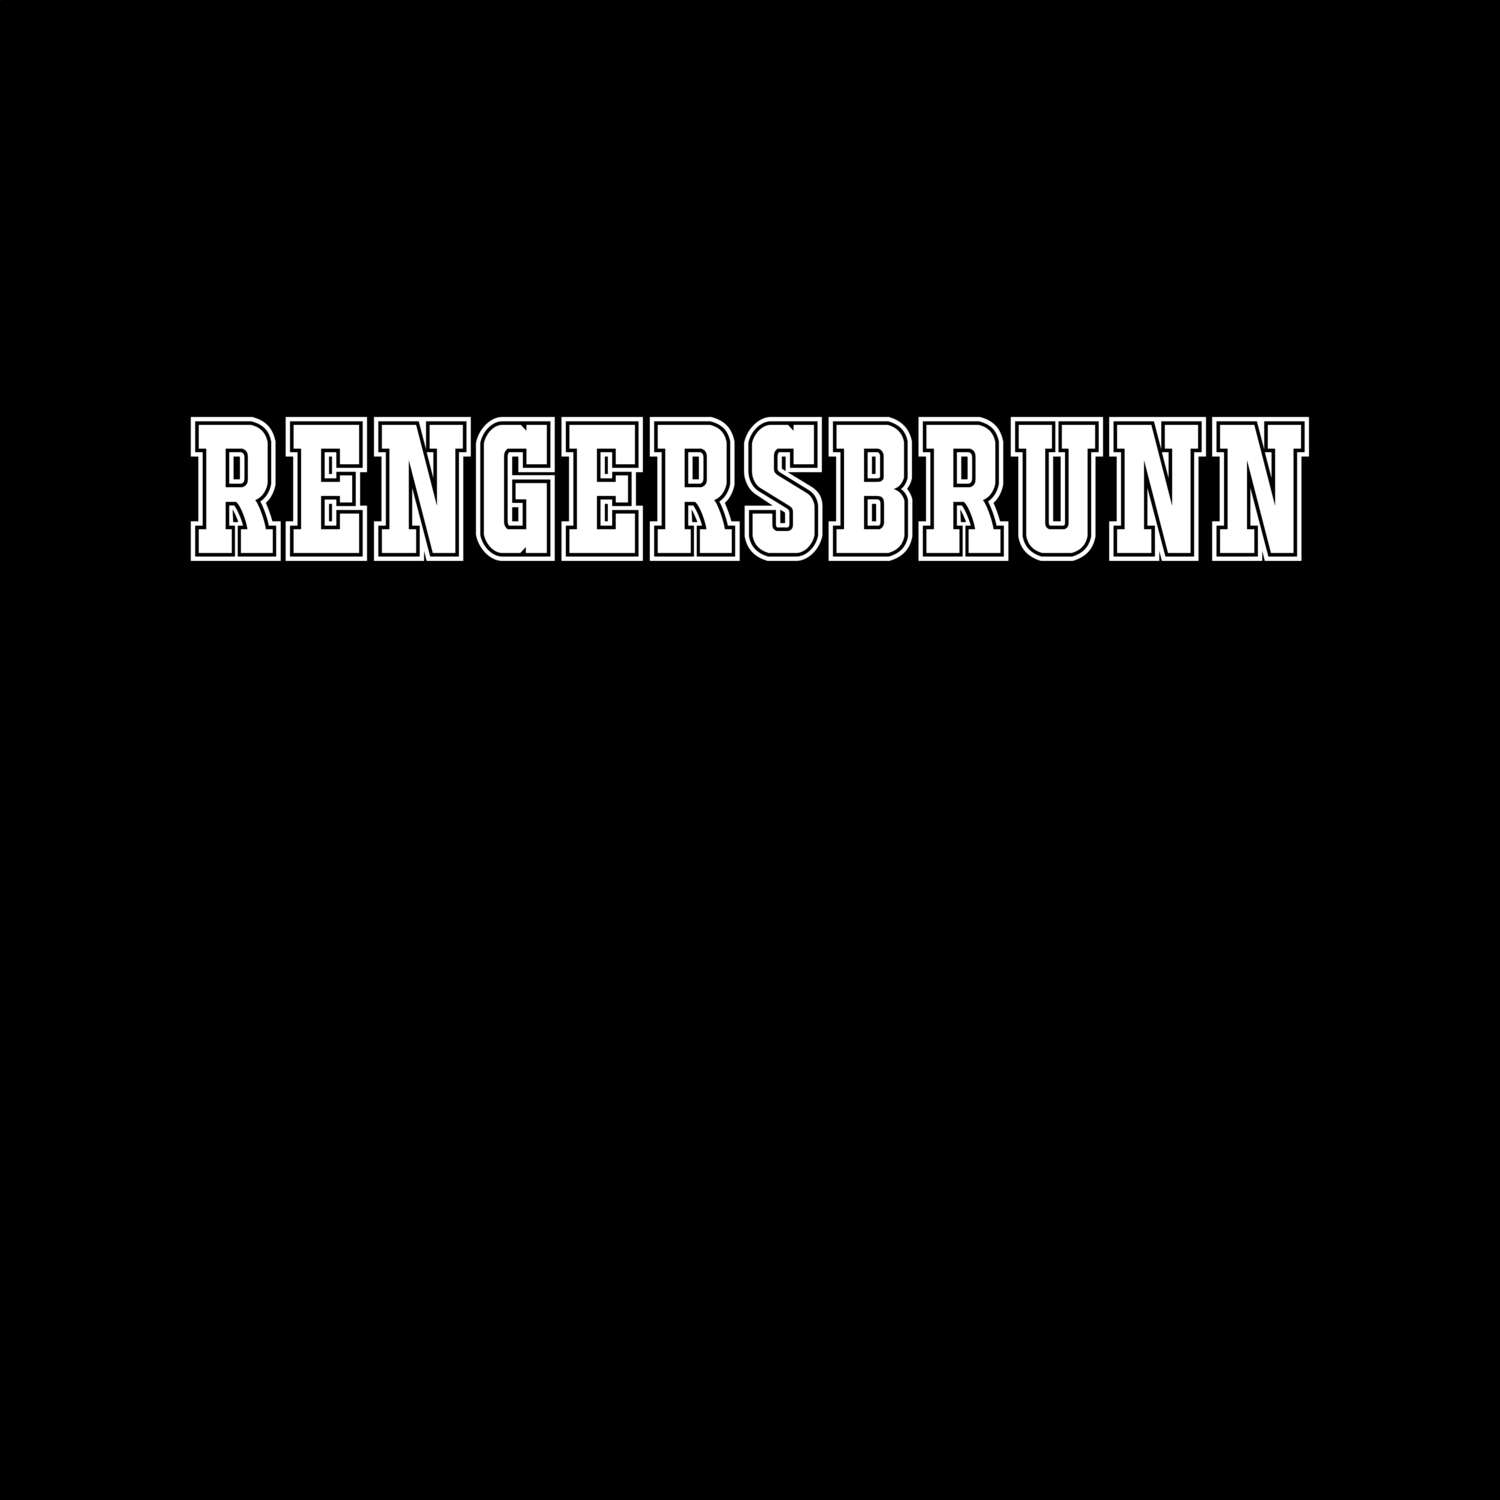 Rengersbrunn T-Shirt »Classic«